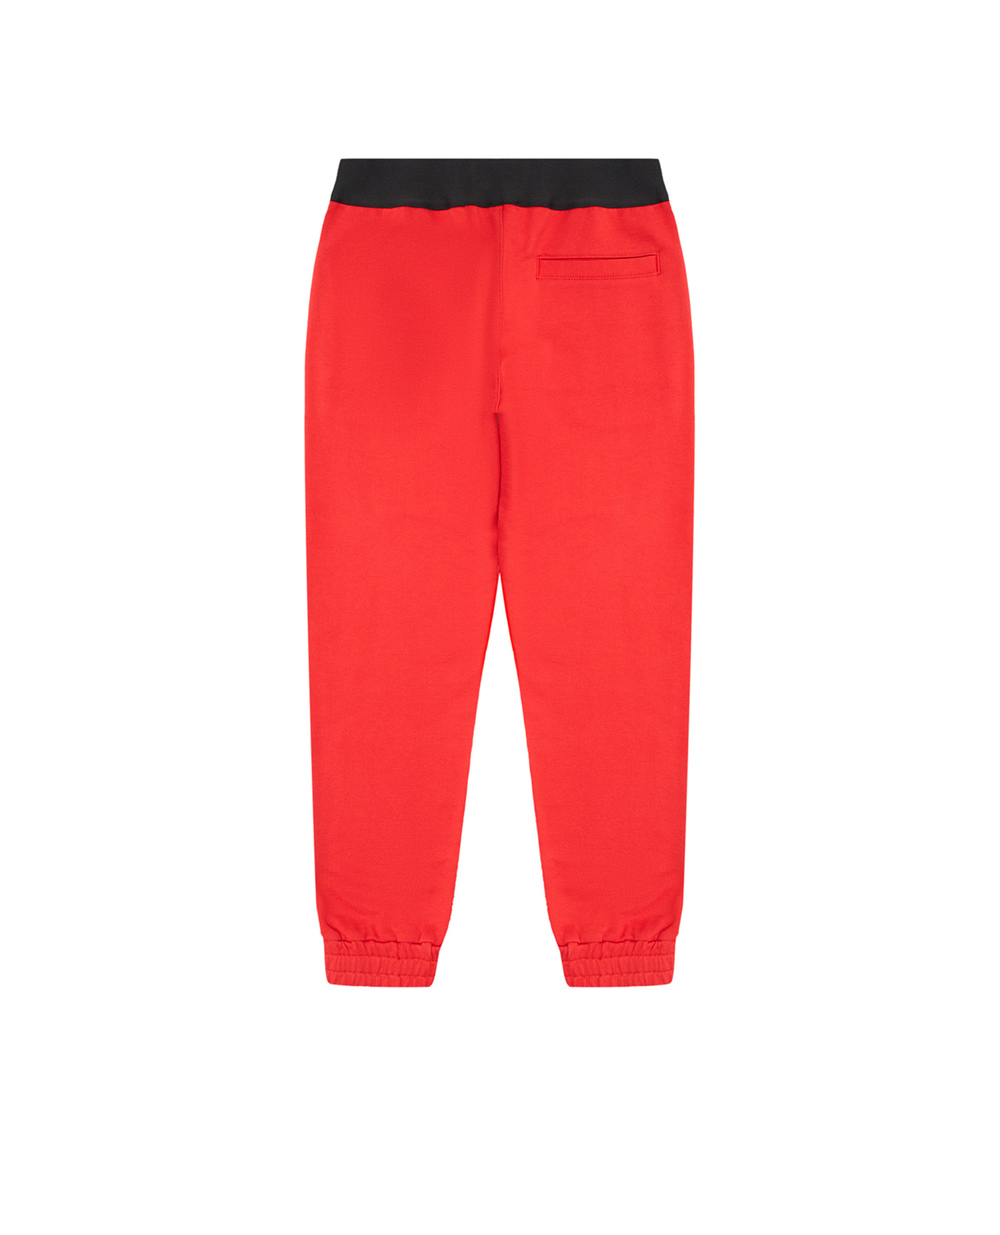 Детские спортивные брюки (костюм) Dolce&Gabbana Kids L5JP9G-G7E3Z-S, красный цвет • Купить в интернет-магазине Kameron